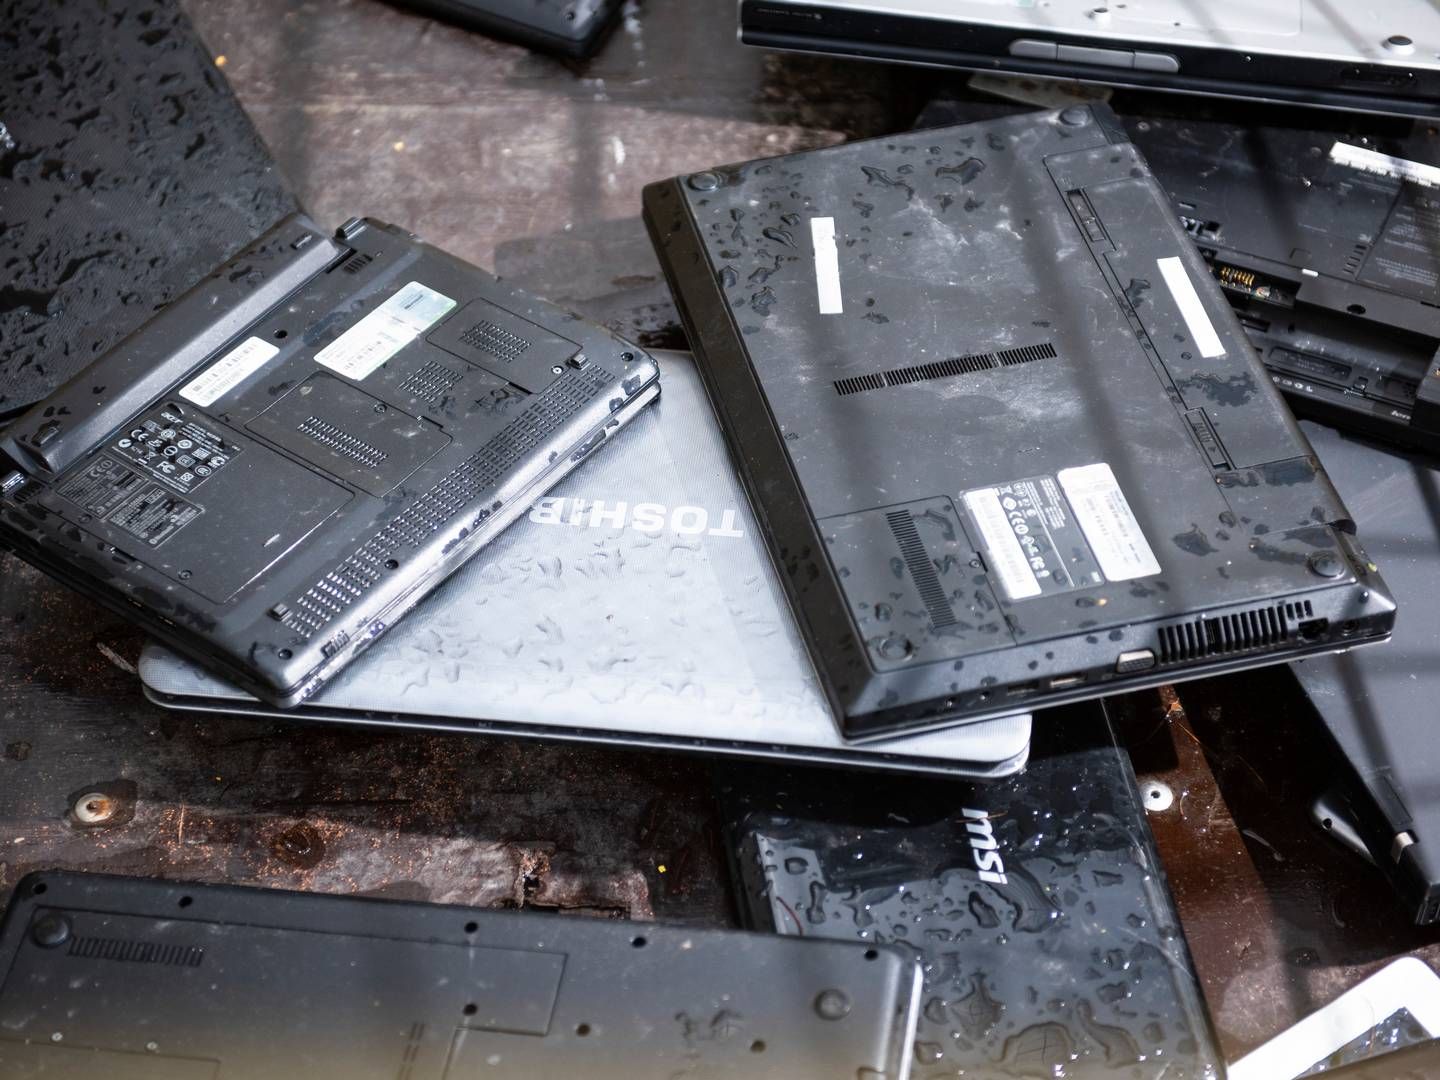 En brugt computer eller mobiltelefon behøver ikke at være færdig, bare fordi den er blevet kasseret. | Foto: Søren Vendelbo